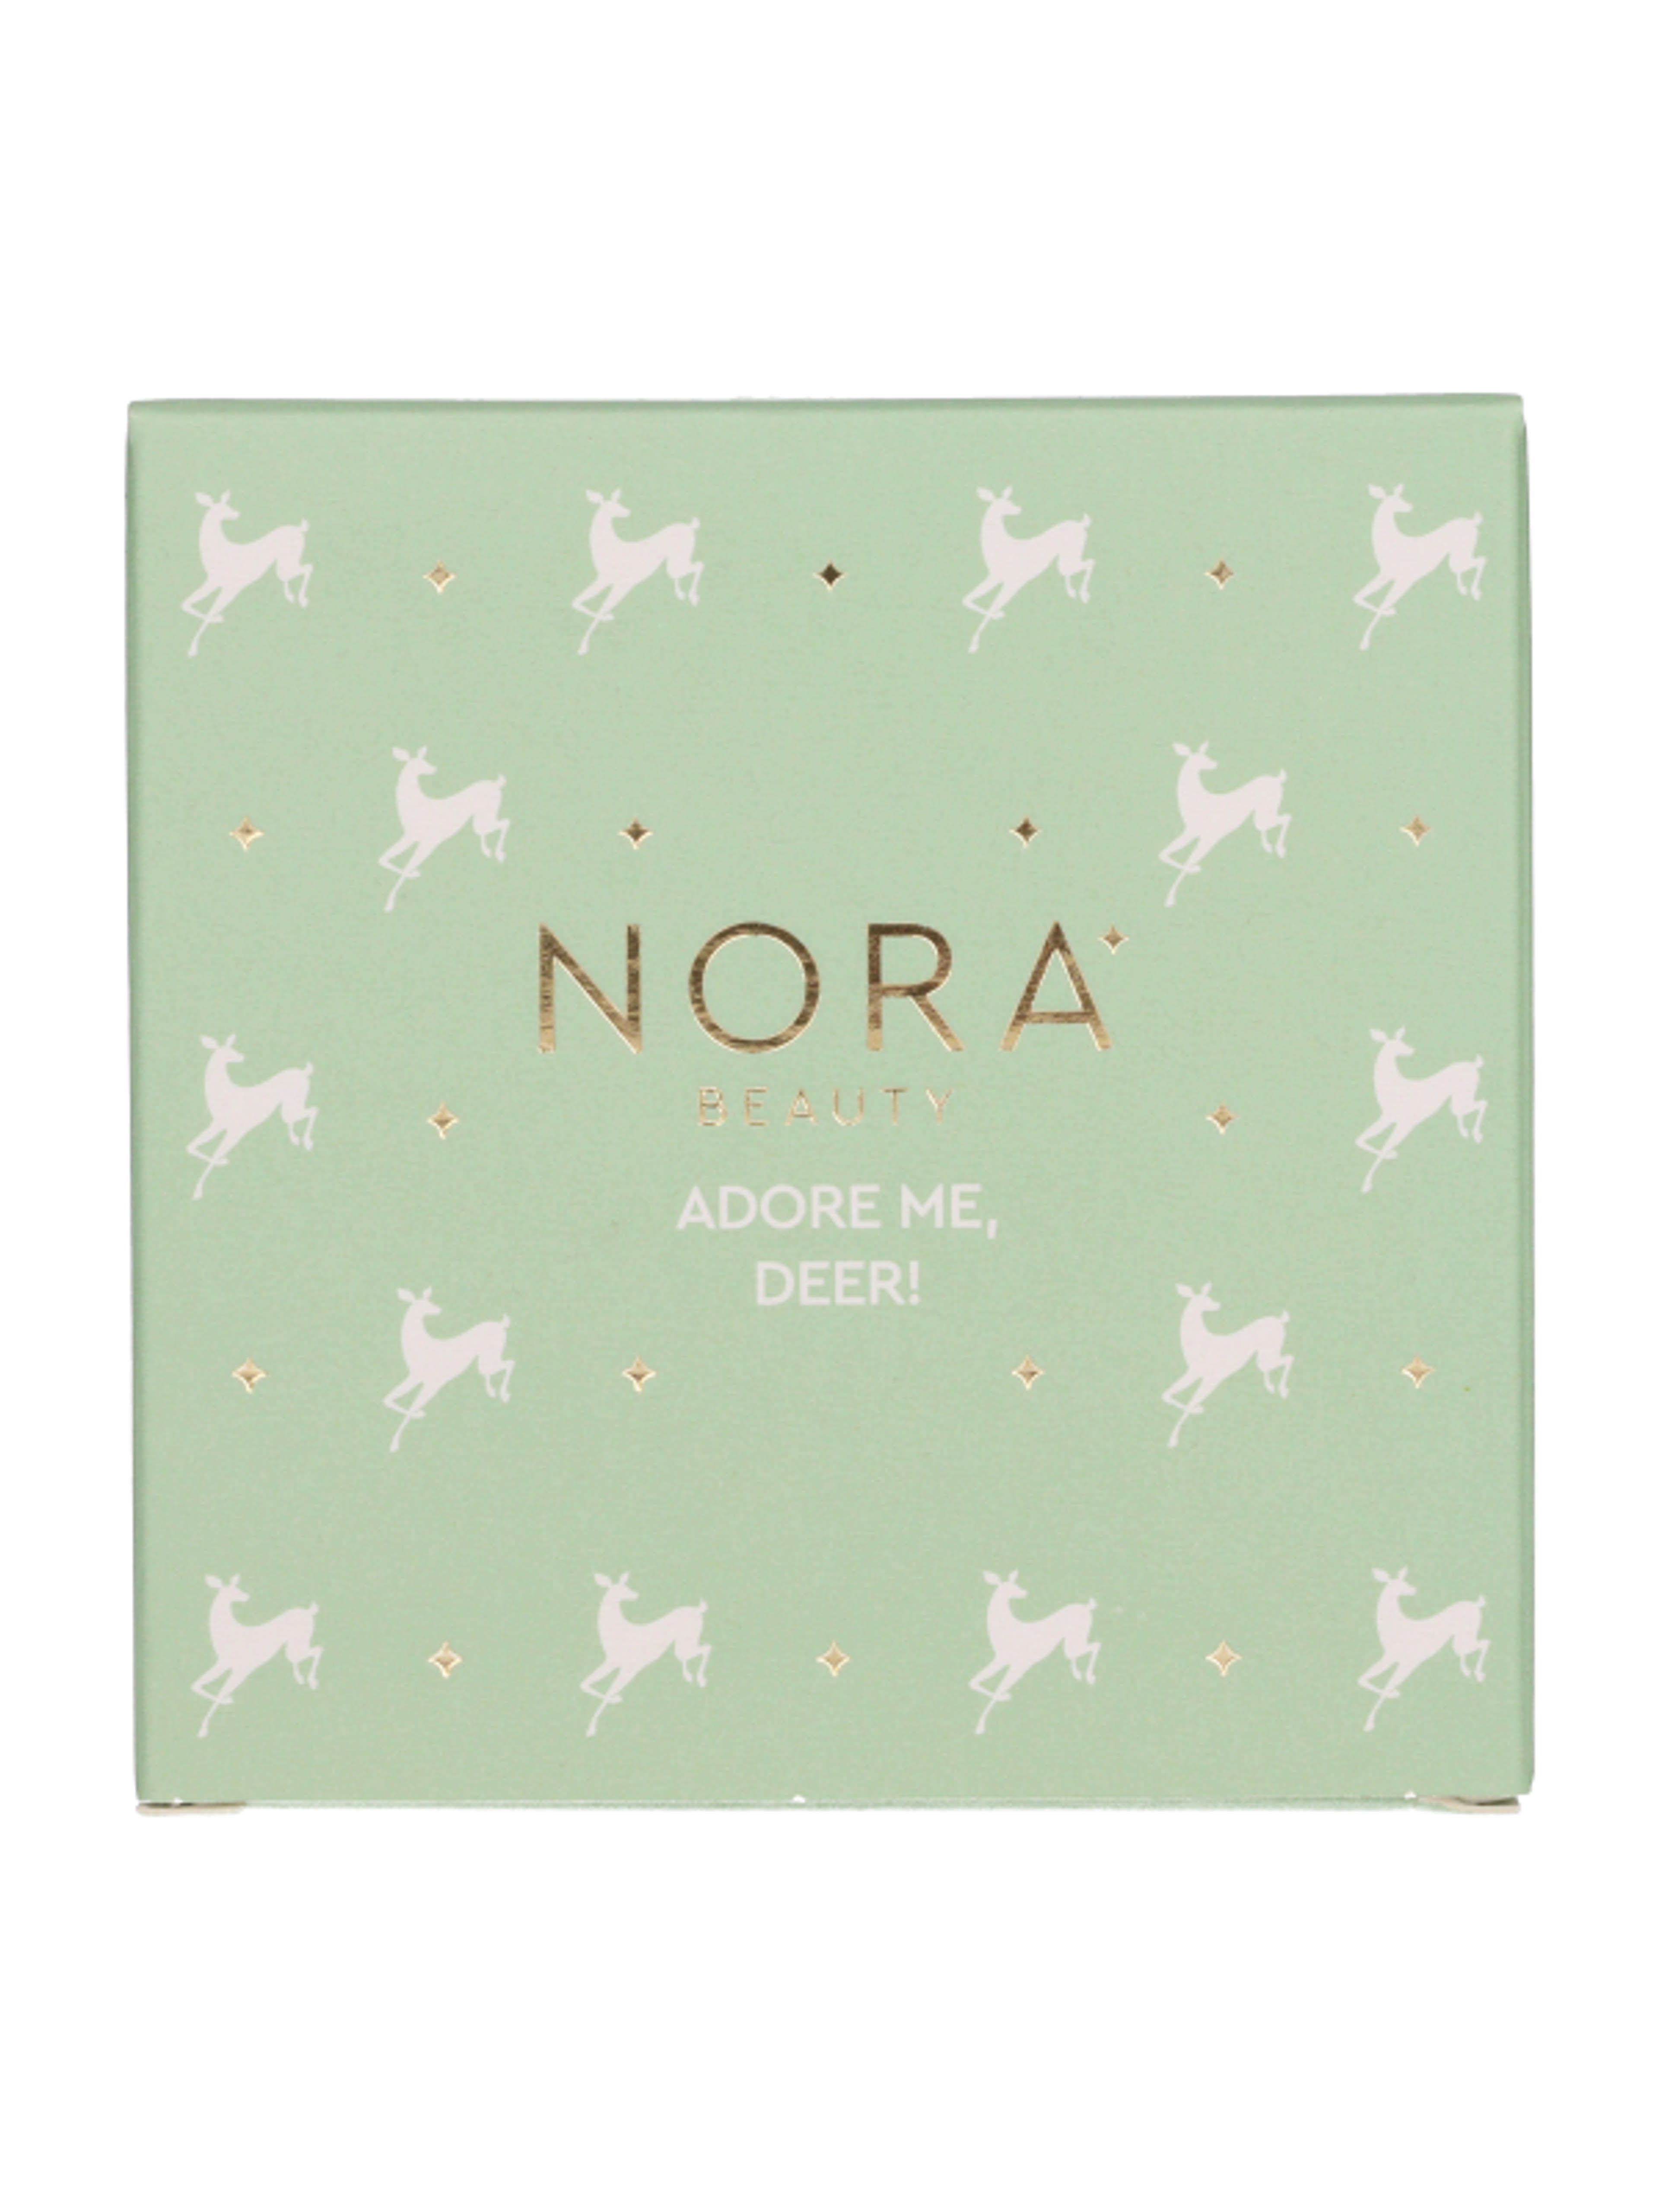 Nora Beauty szemhéjpúder paletta/02 meleg színárnyalatok - 1 db